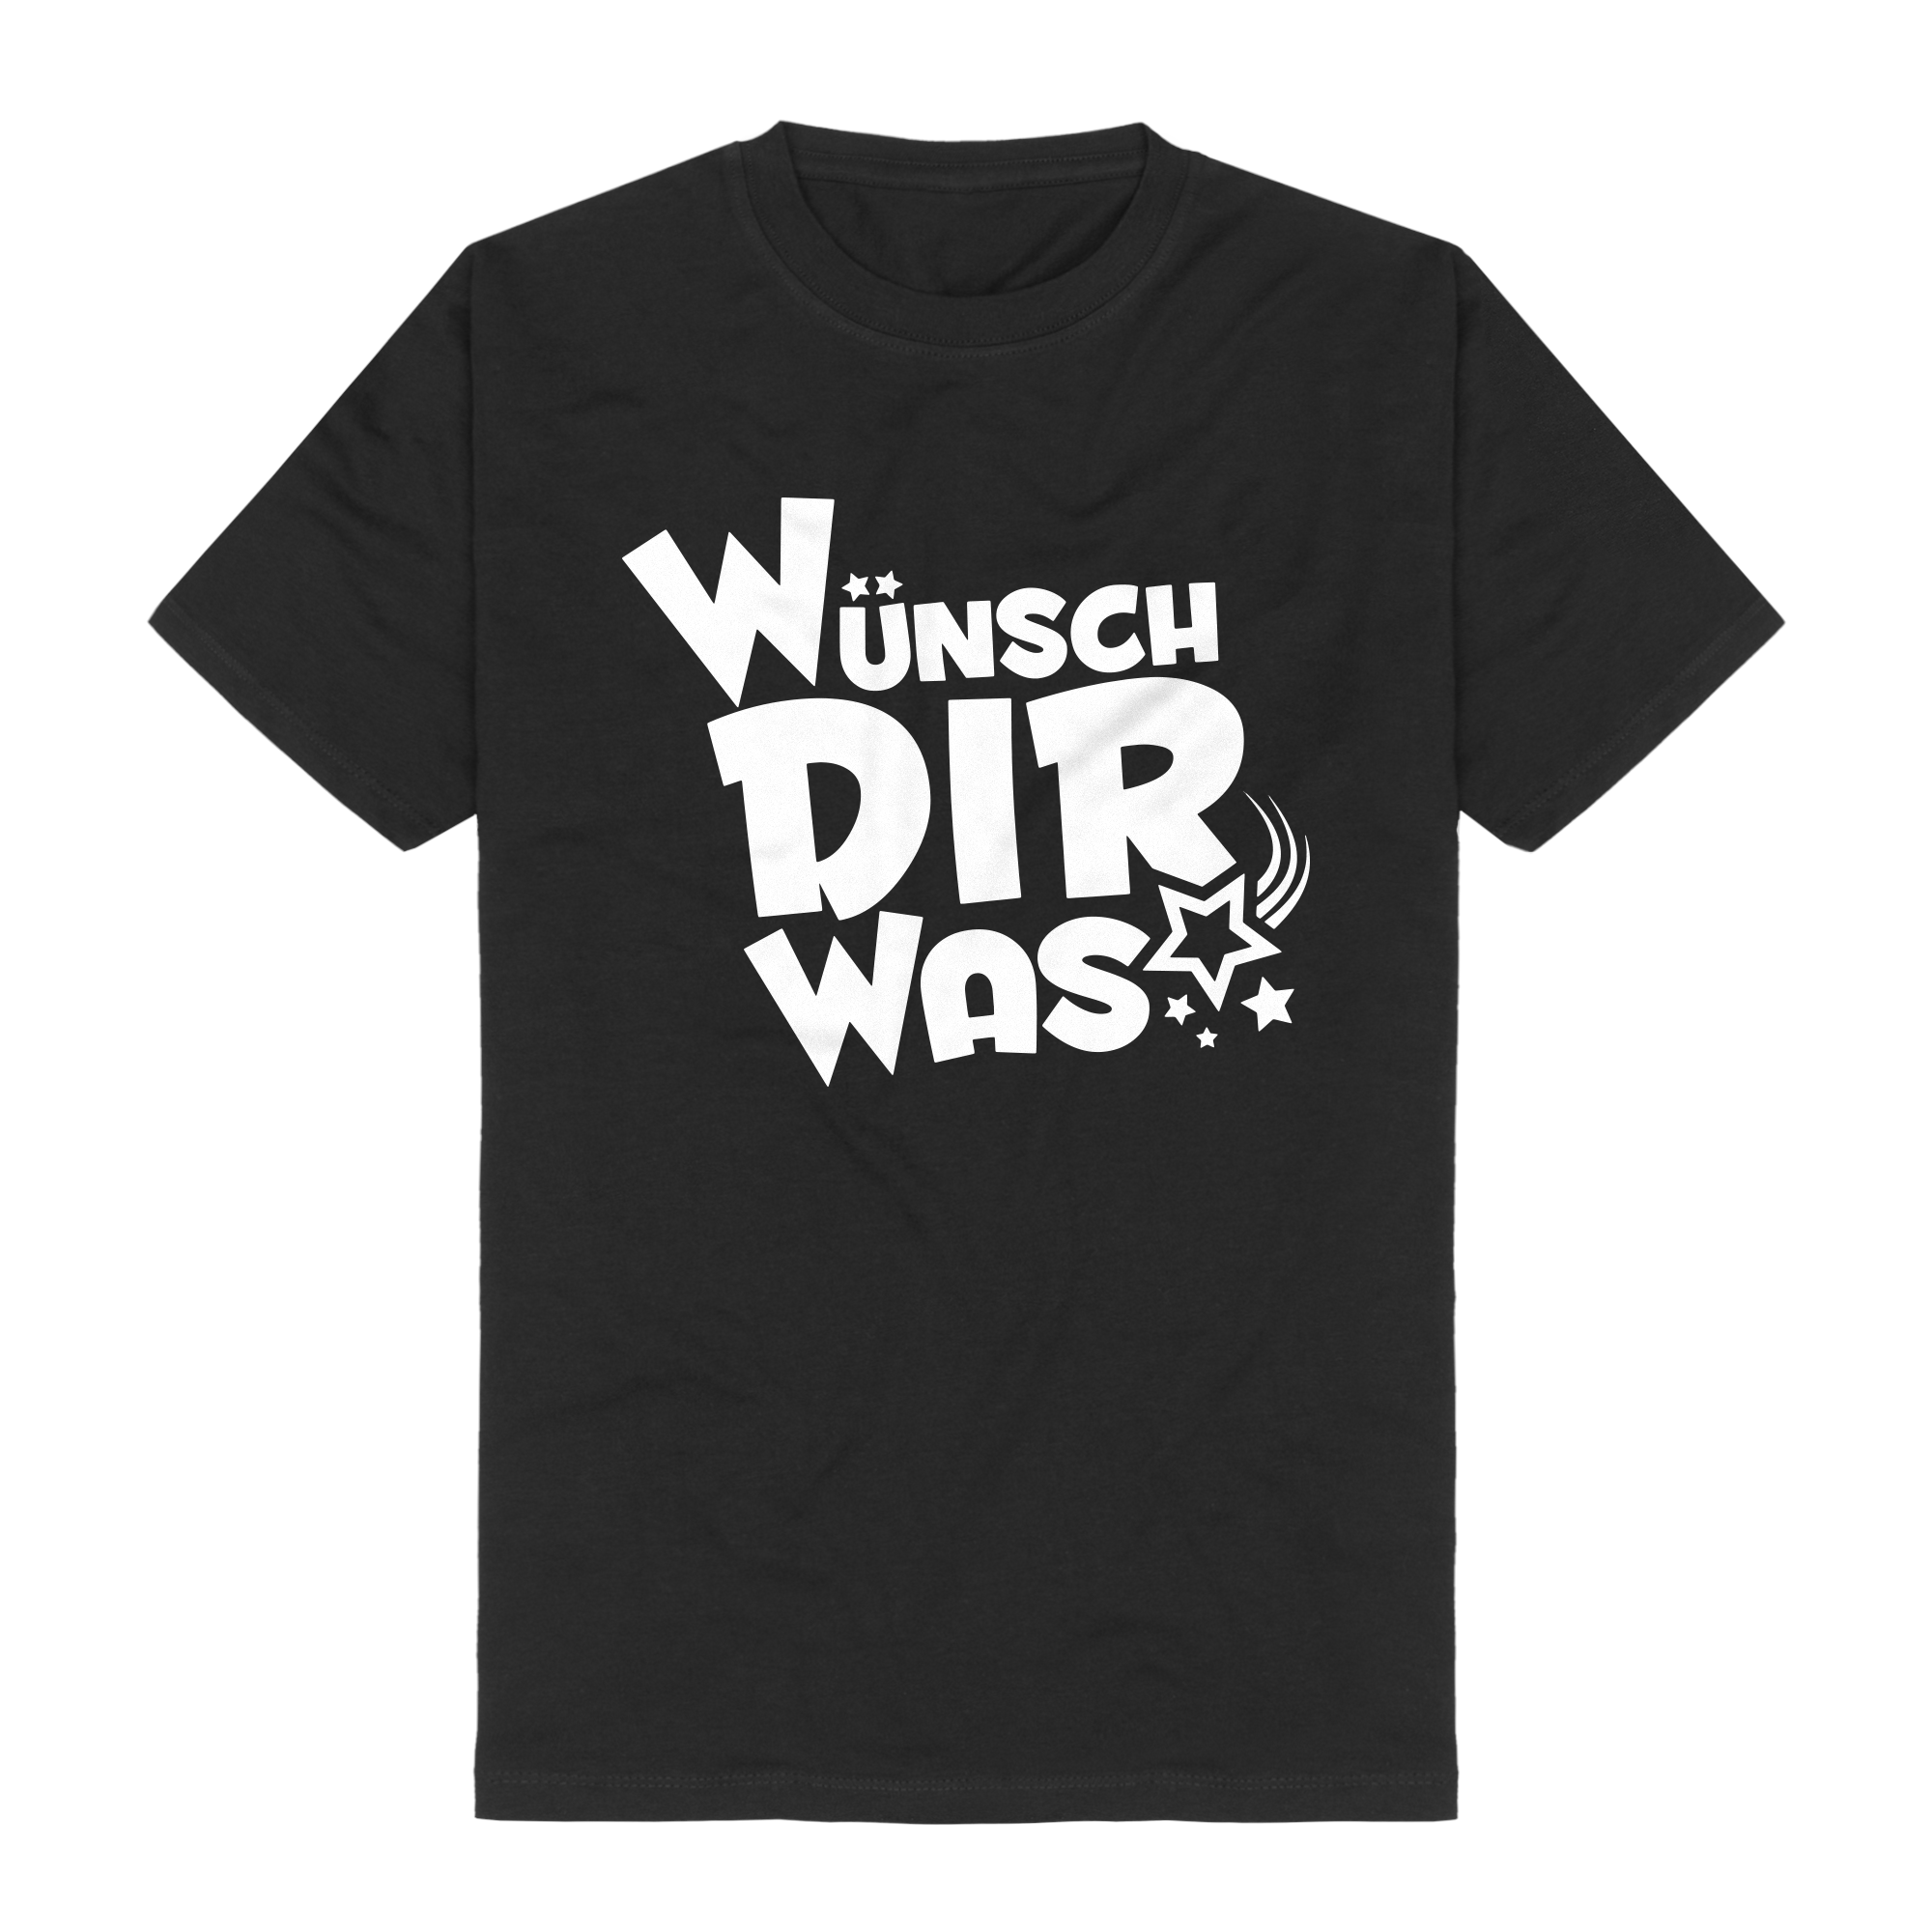 https://images.bravado.de/prod/product-assets/grammel-sascha/sascha-grammel/products/503942/web/392714/image-thumb__392714__3000x3000_original/Sascha-Grammel-Wuensch-Dir-Was-Logo-Shirt-schwarz-T-Shirt-schwarz-503942-392714.png